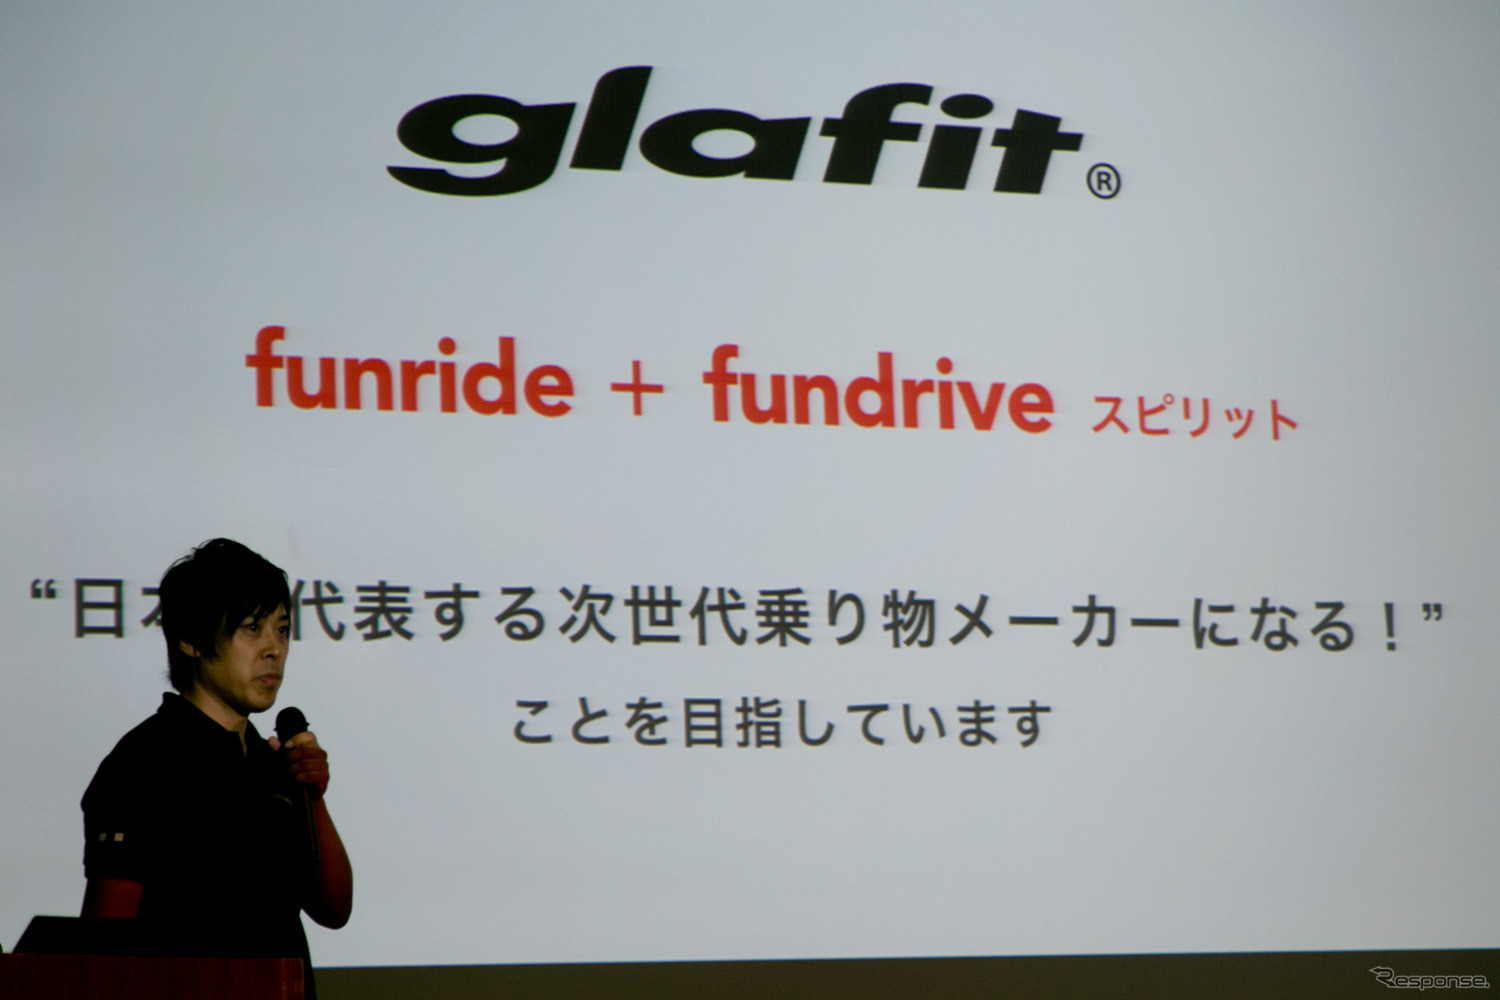 ハイブリッドバイク「glafit」発表会